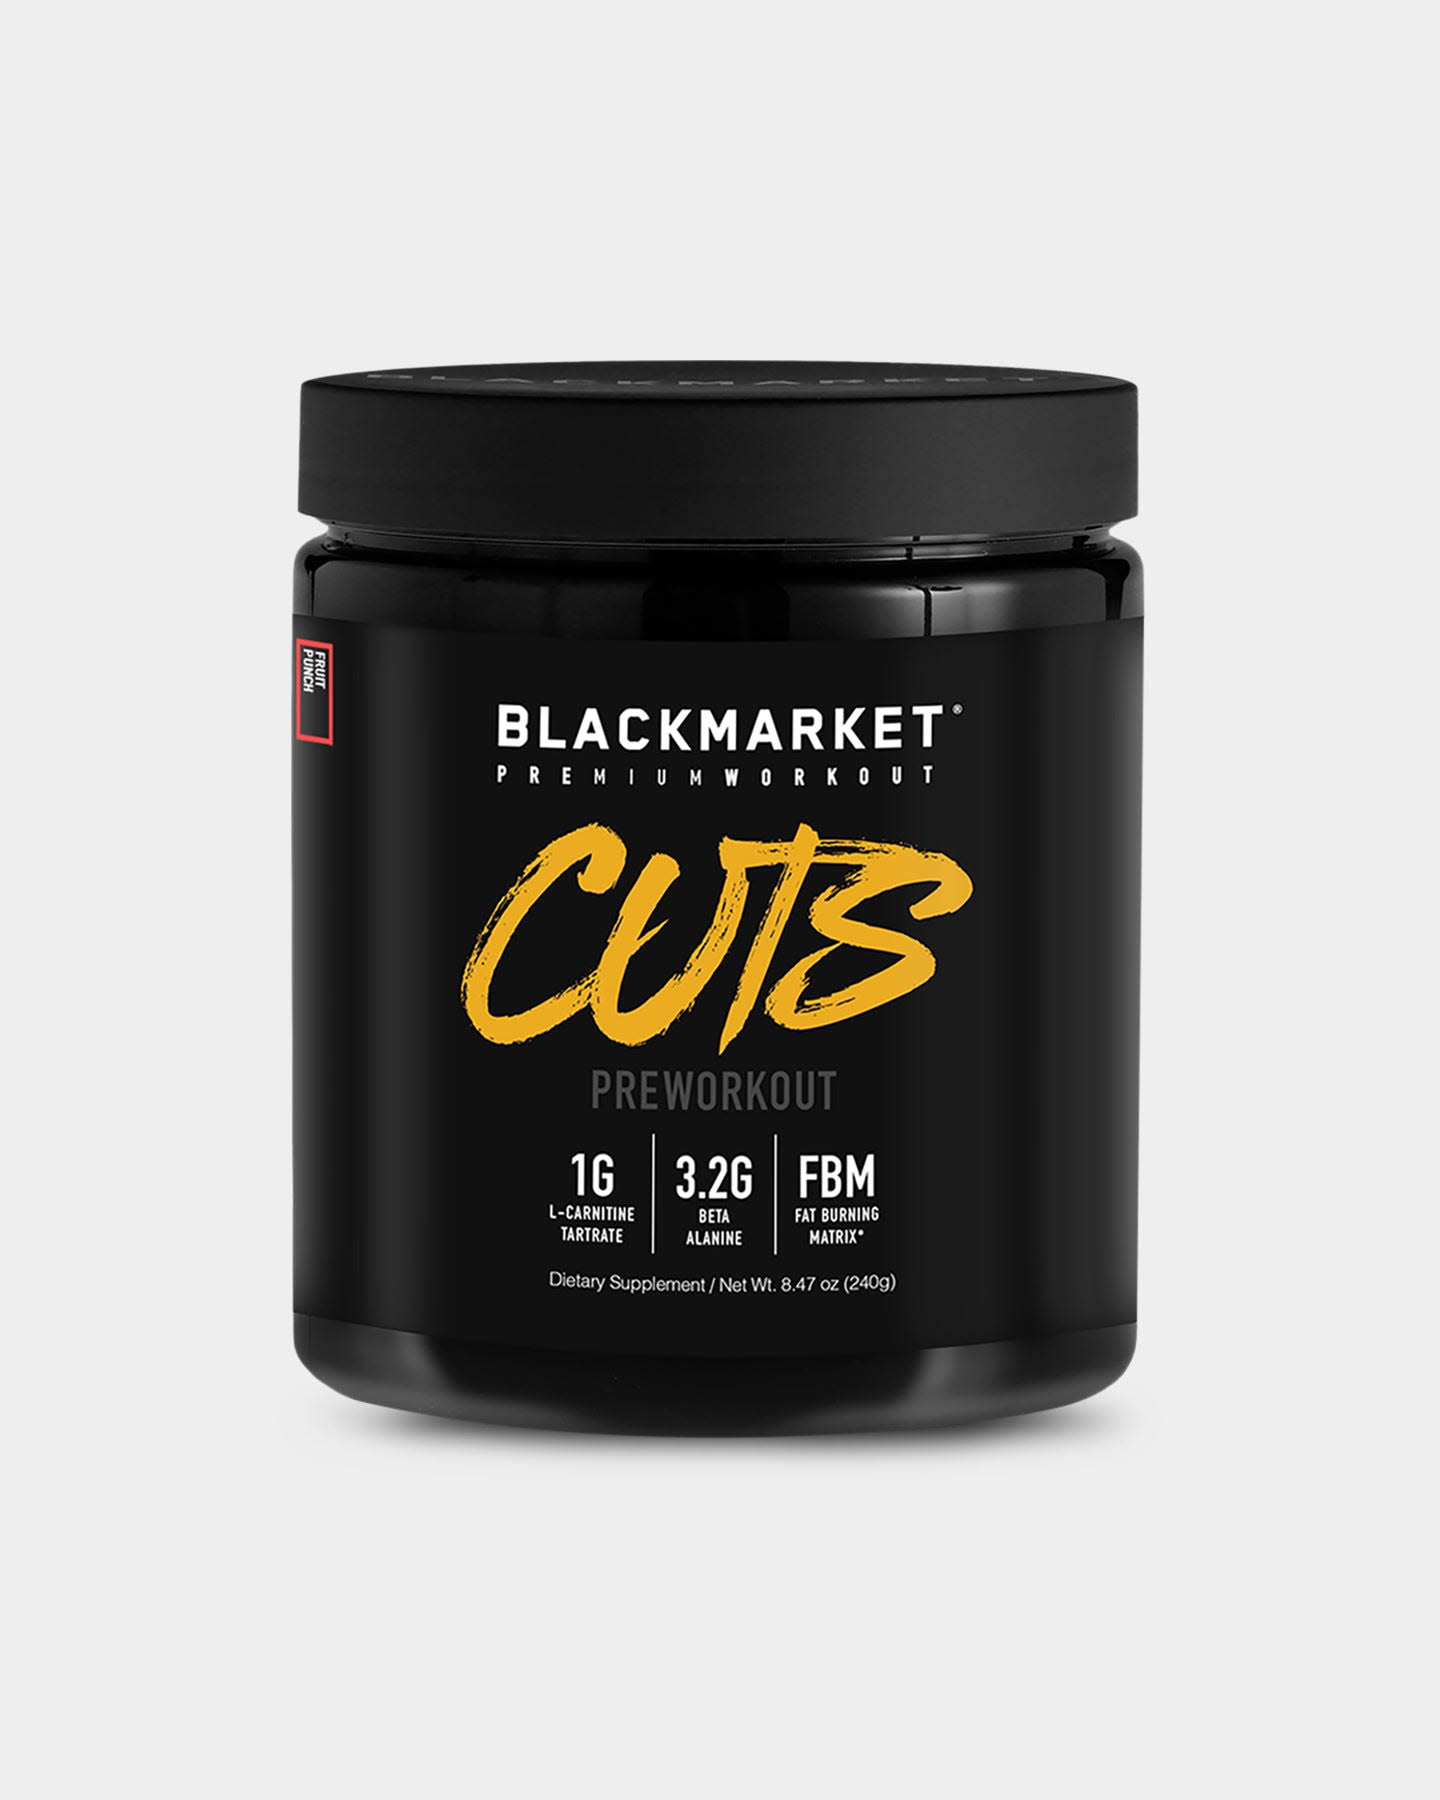 Blackmarket CUTS Pre Workout | Pre-Workout | 30 Servings - Fruit Punch